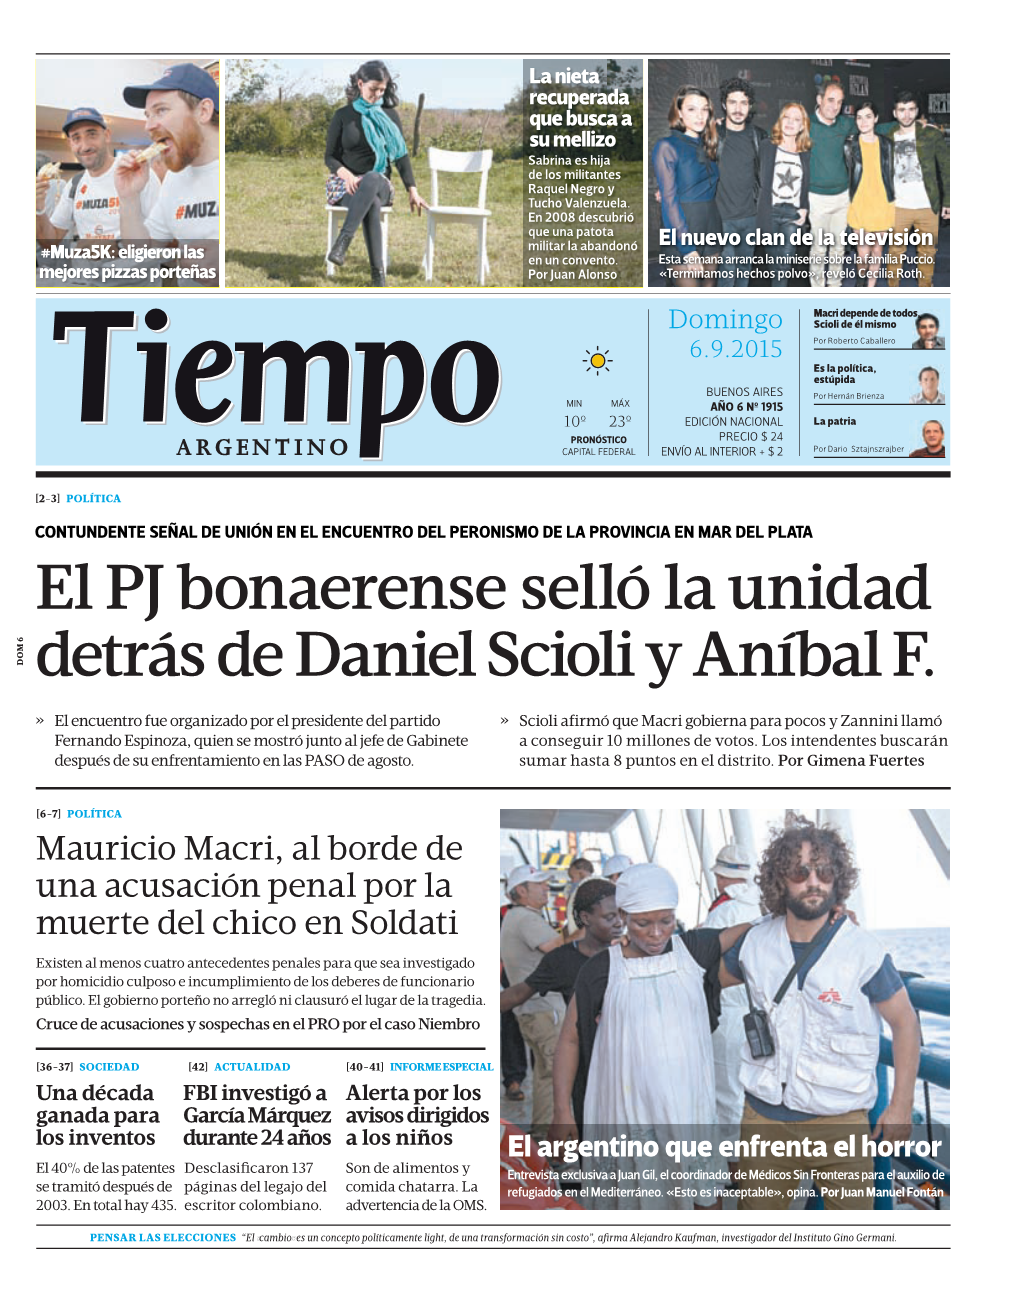 El PJ Bonaerense Selló La Unidad Detrás De Daniel Scioli Y Aníbal F